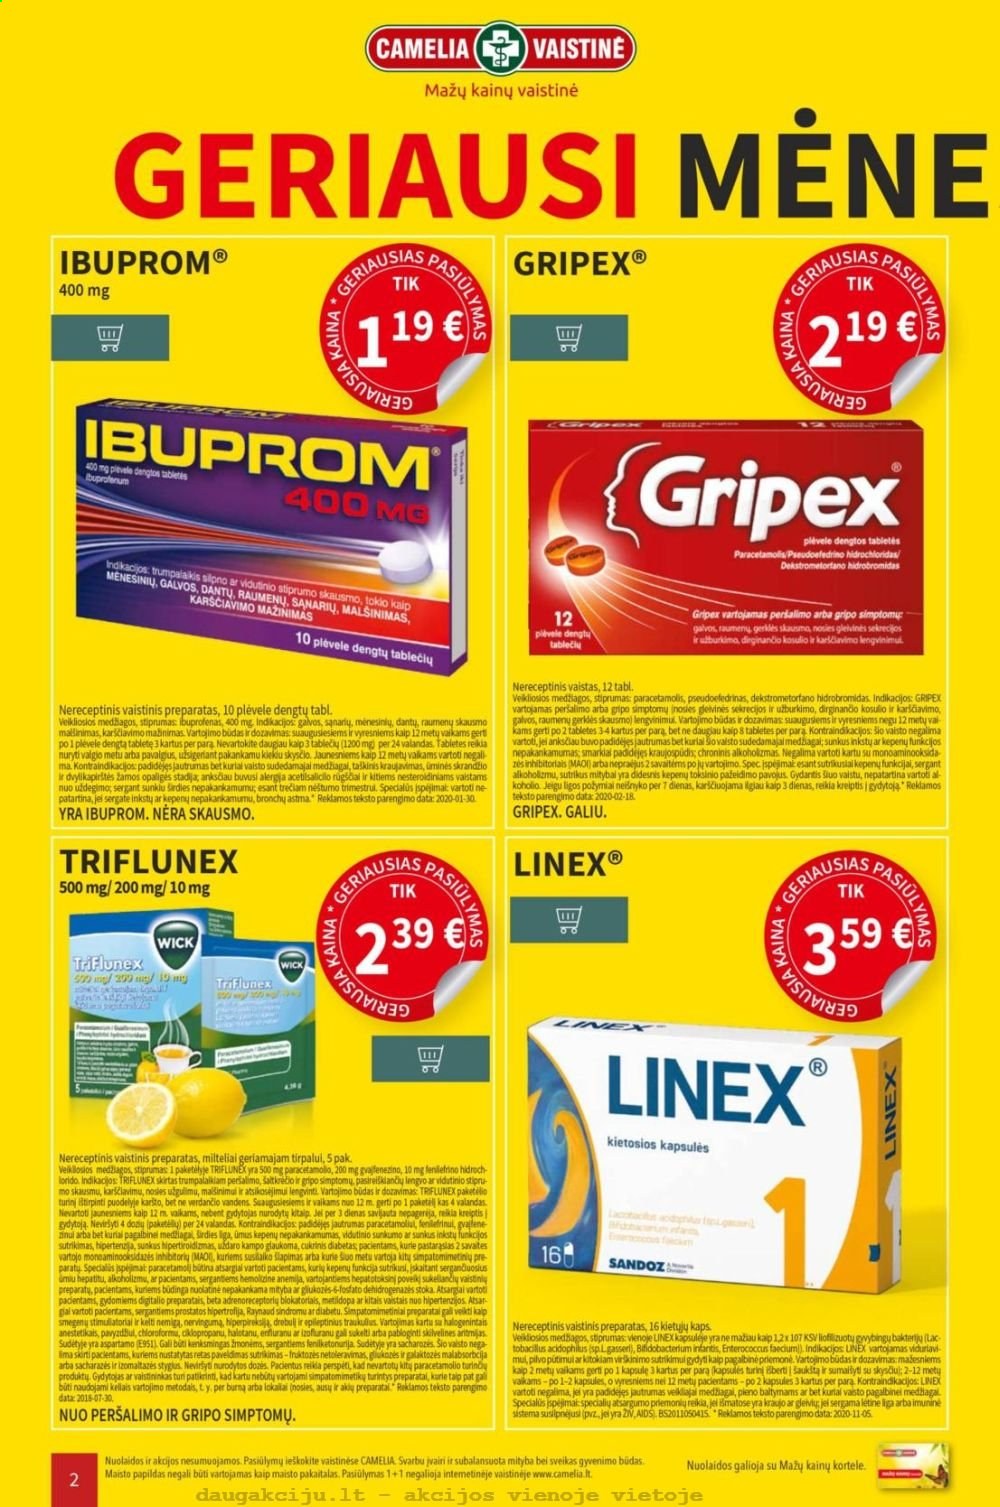 thumbnail - „CAMELIA Vaistinė“ leidinys - 2021 01 04 - 2021 01 31 - Išpardavimų produktai - Ibuprom, Zn. 2 puslapis.